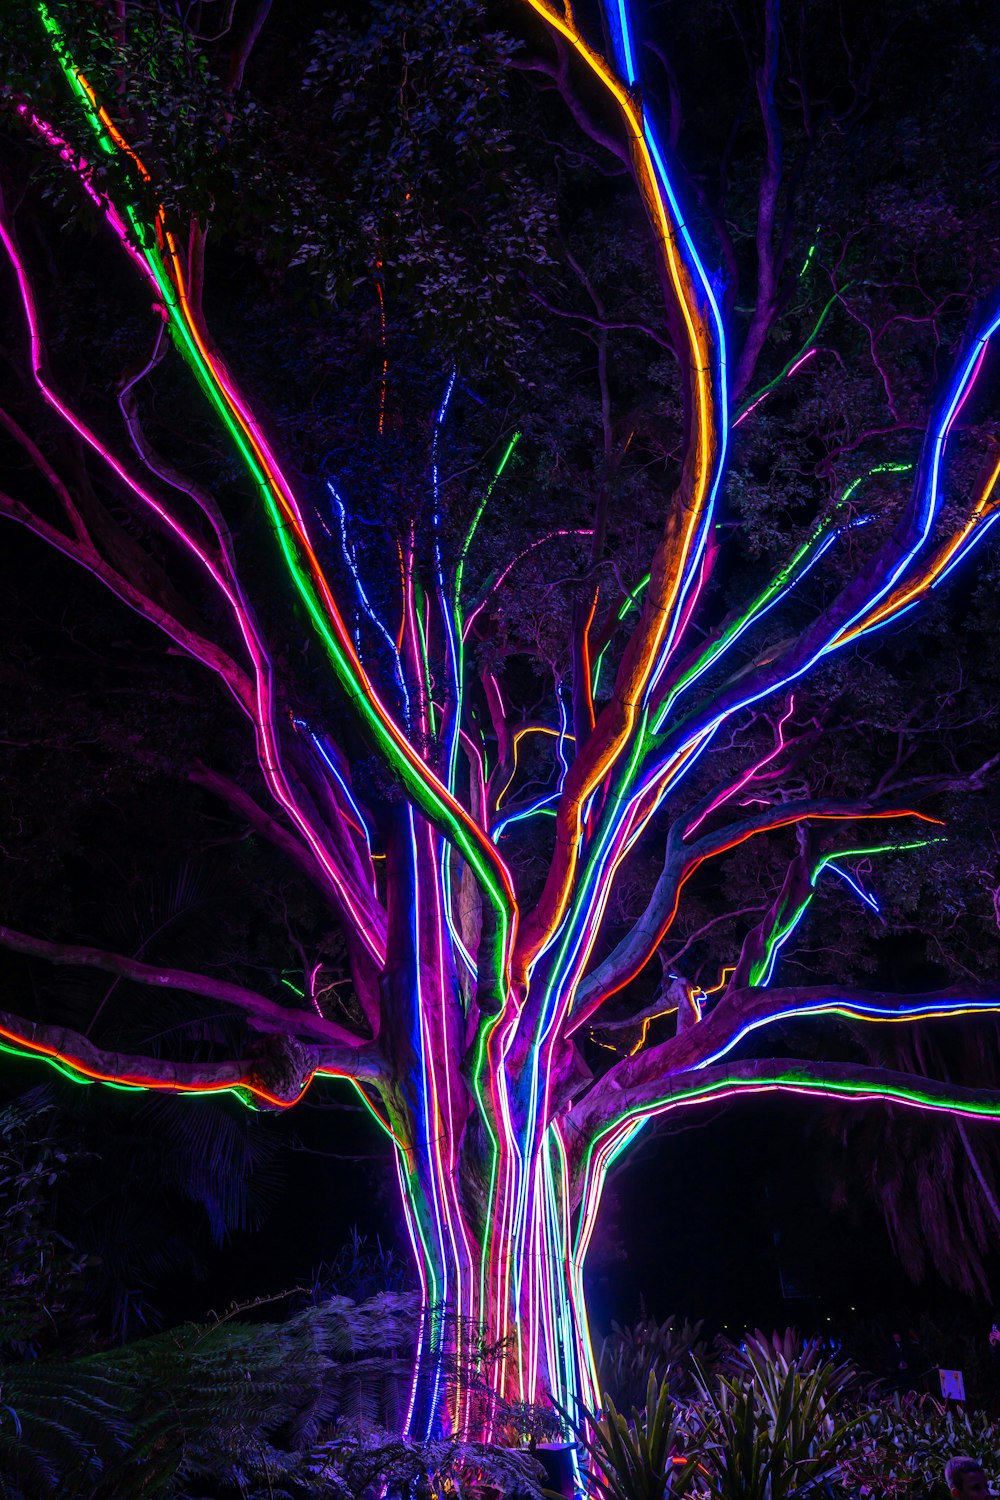 Un arbre illuminé au milieu d’une forêt